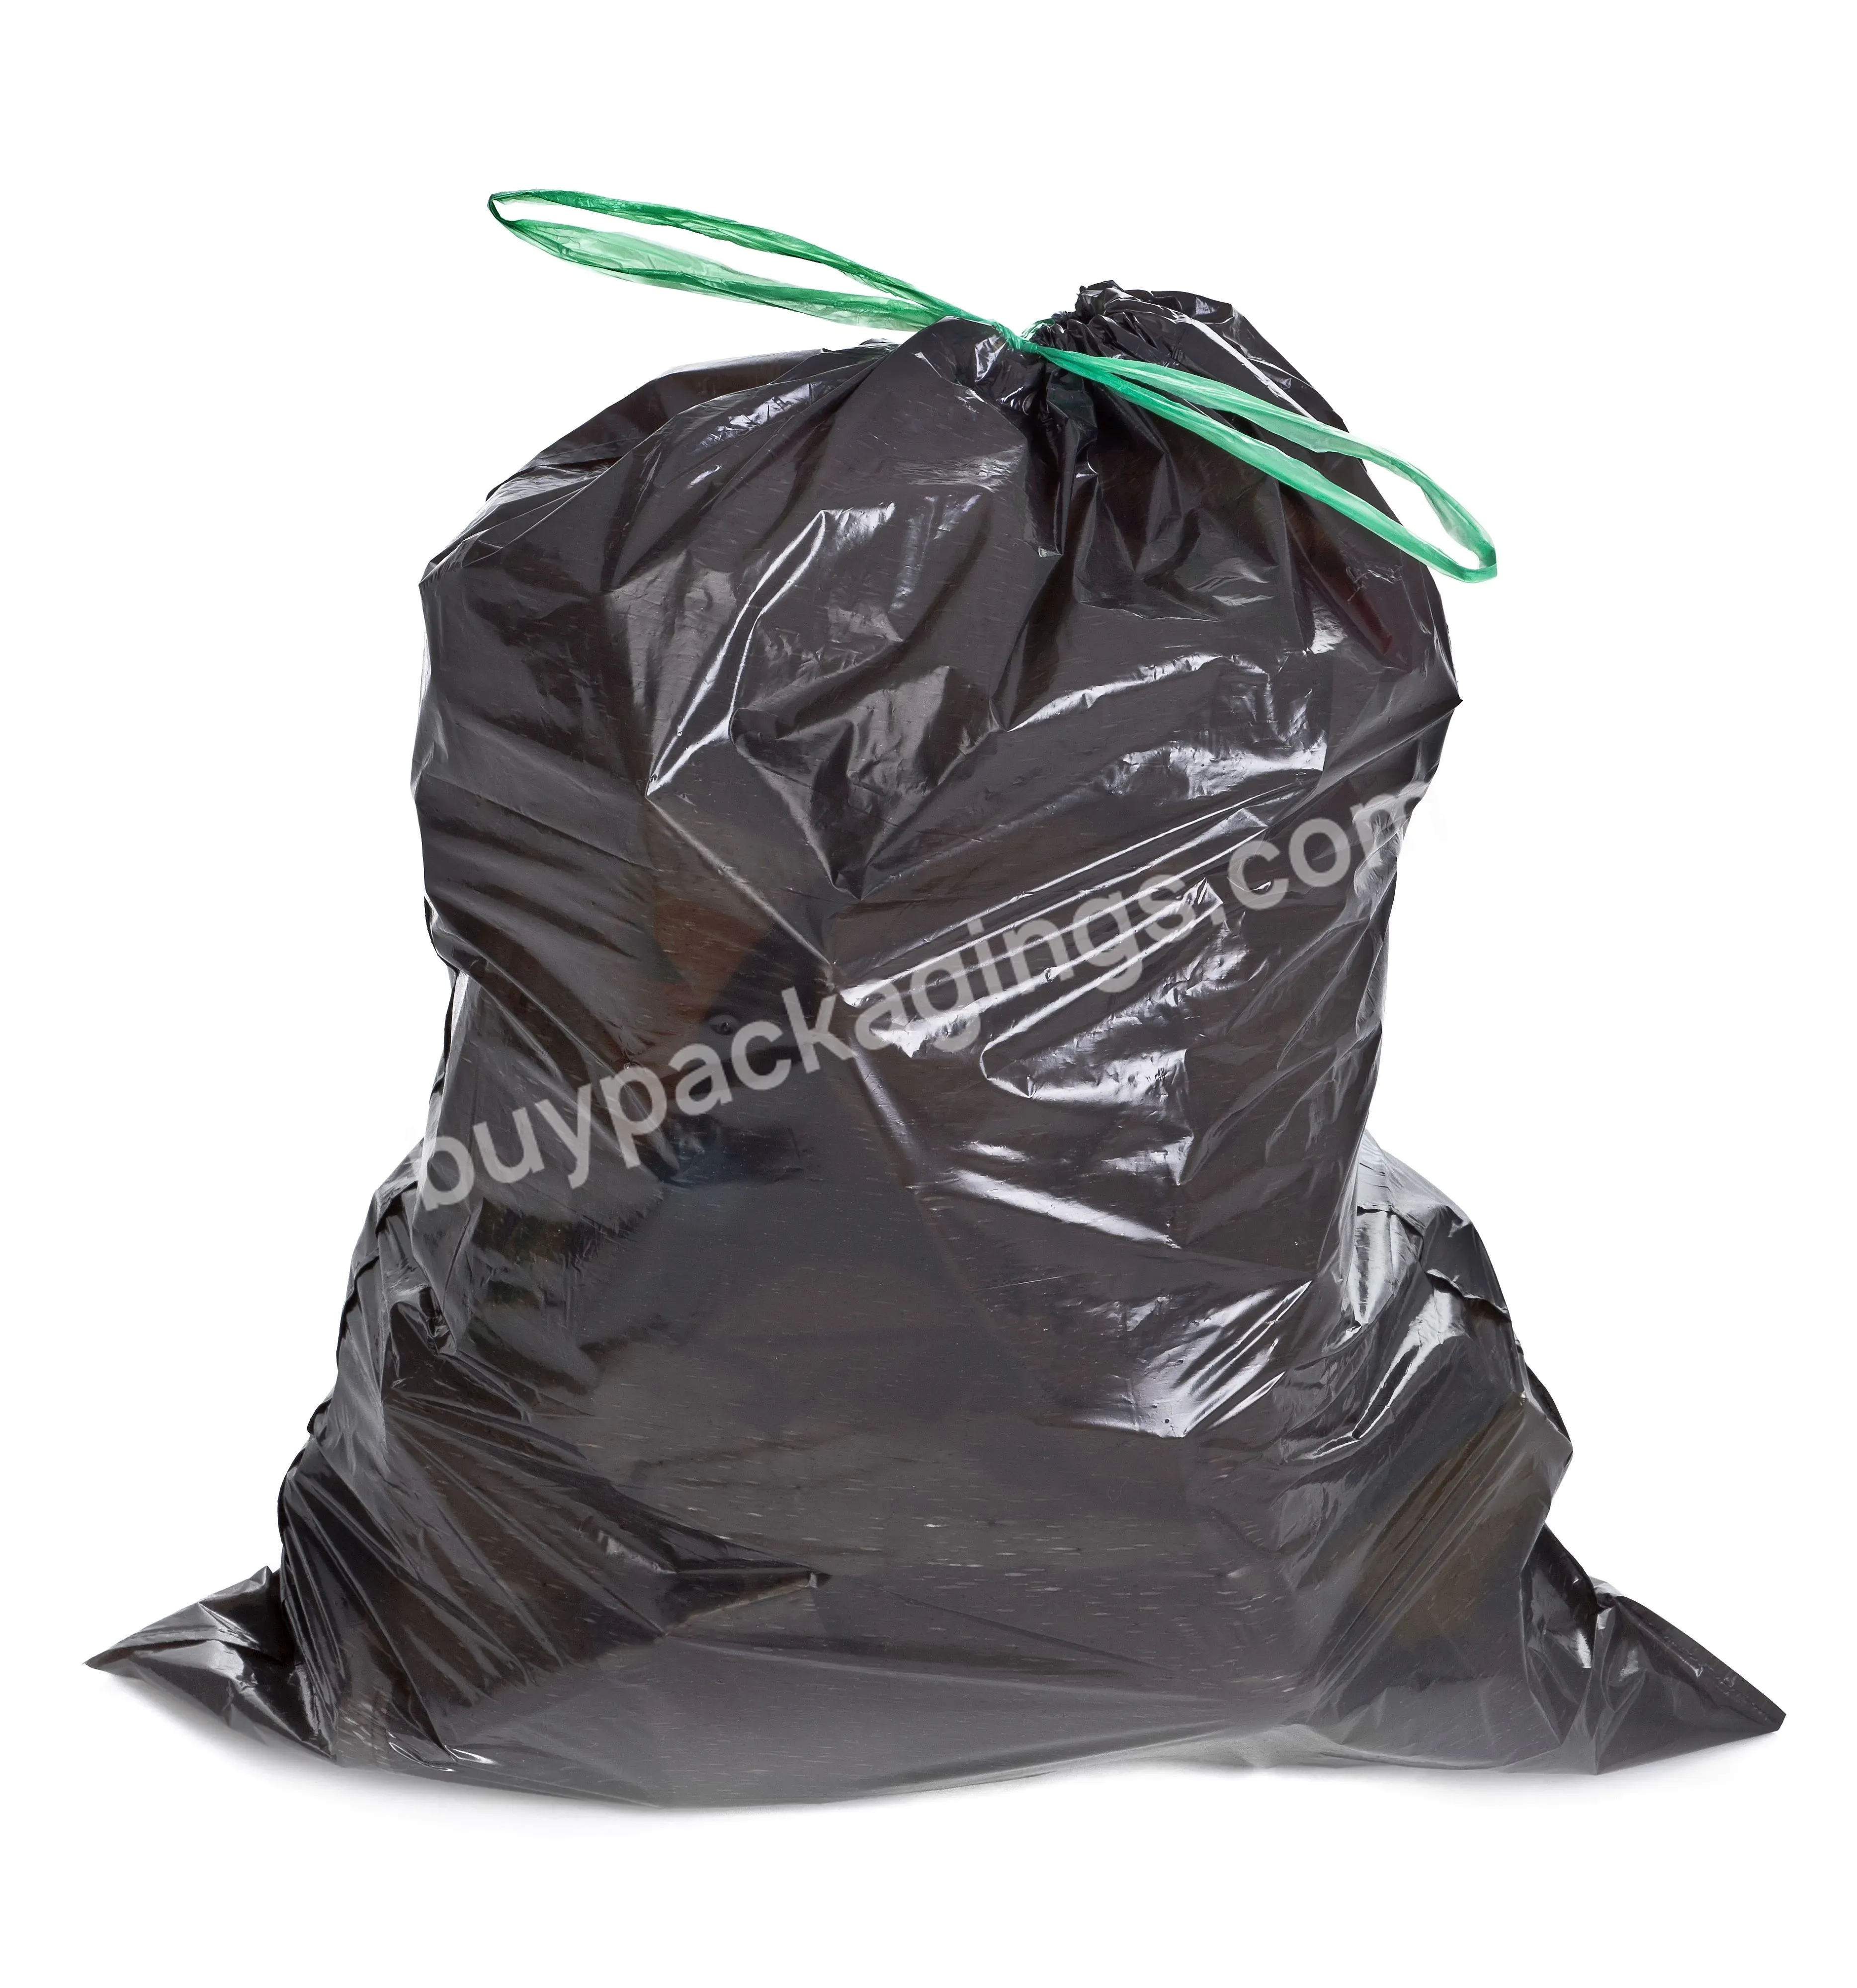 Plastic Garbage Bag,Drawstring Garbage Bag 30 Gallons For Outdoor